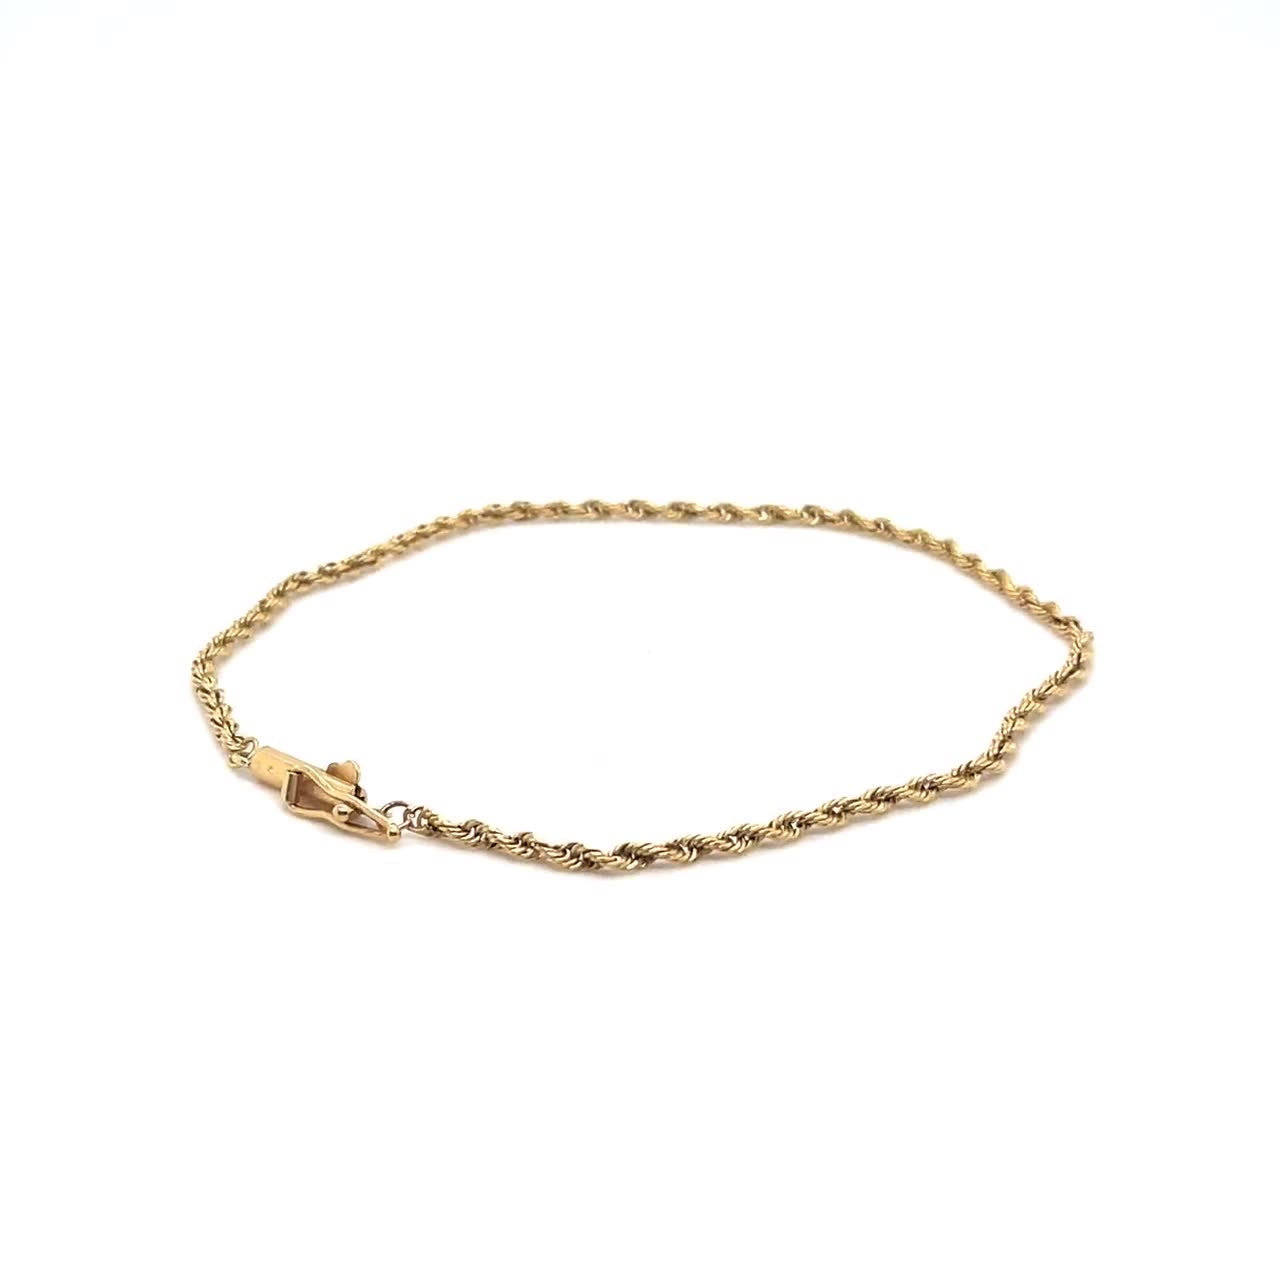 Details more than 215 simple 14k gold bracelet best